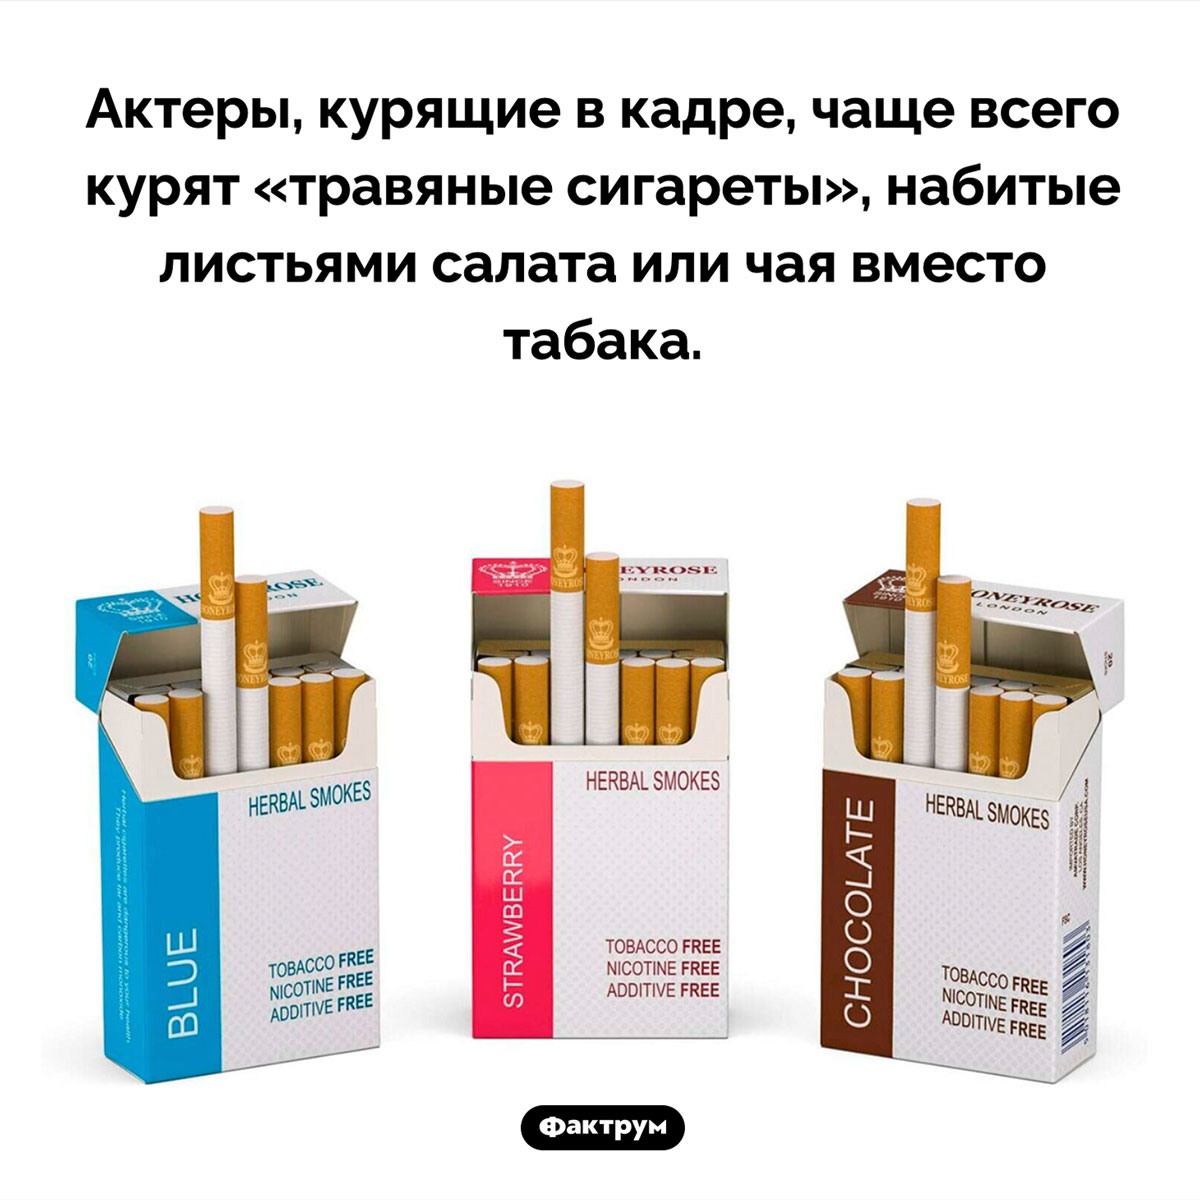 Что курят актеры в кадре. Актеры, курящие в кадре, чаще всего курят «травяные сигареты», набитые листьями салата или чая вместо табака.